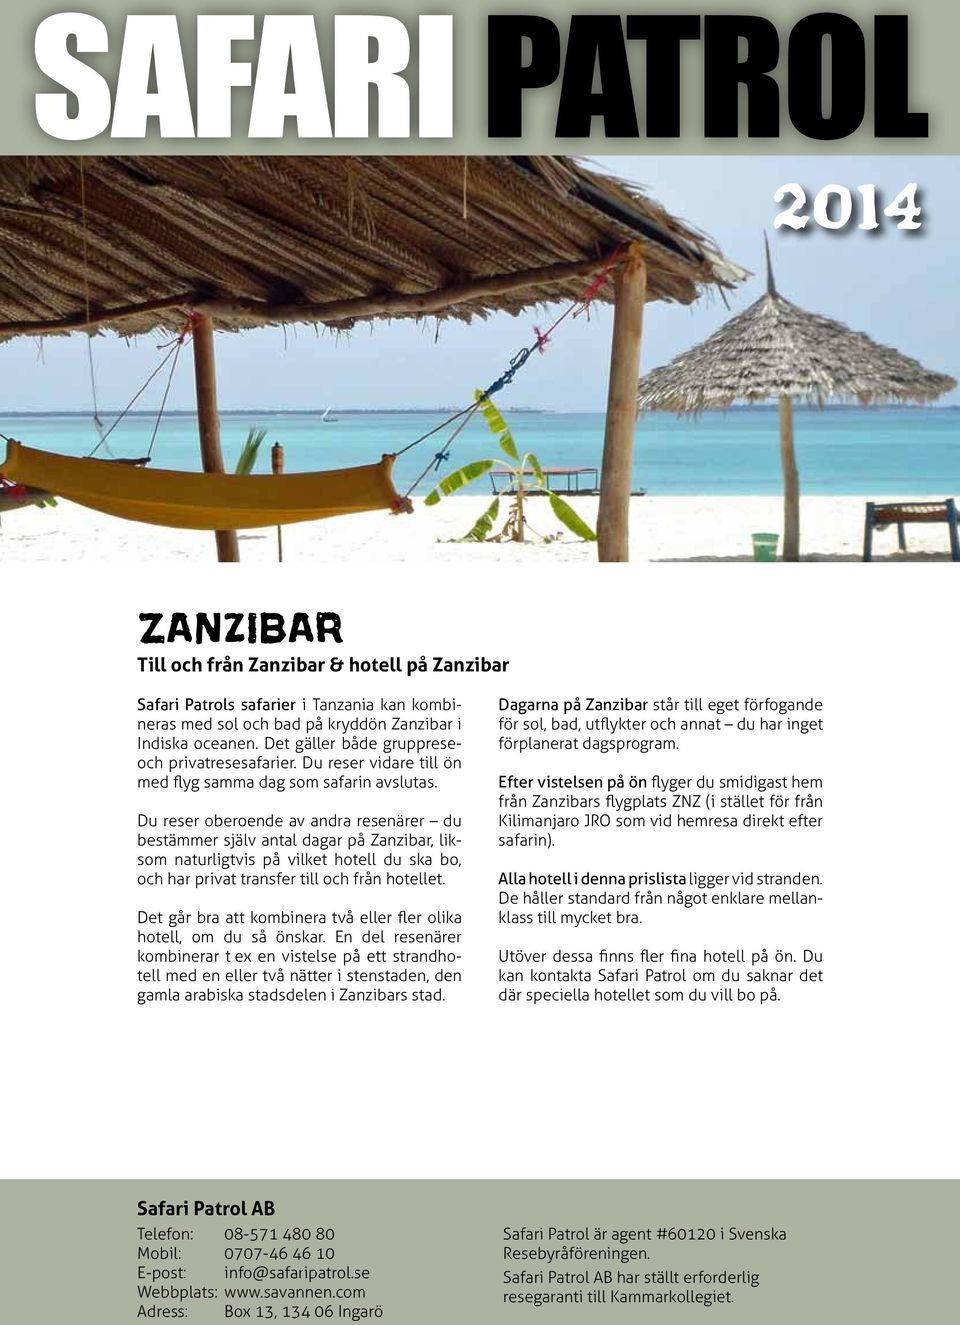 Du reser oberoende av andra resenärer du bestämmer själv antal dagar på Zanzibar, liksom naturligtvis på vilket hotell du ska bo, och har privat transfer till och från hotellet.